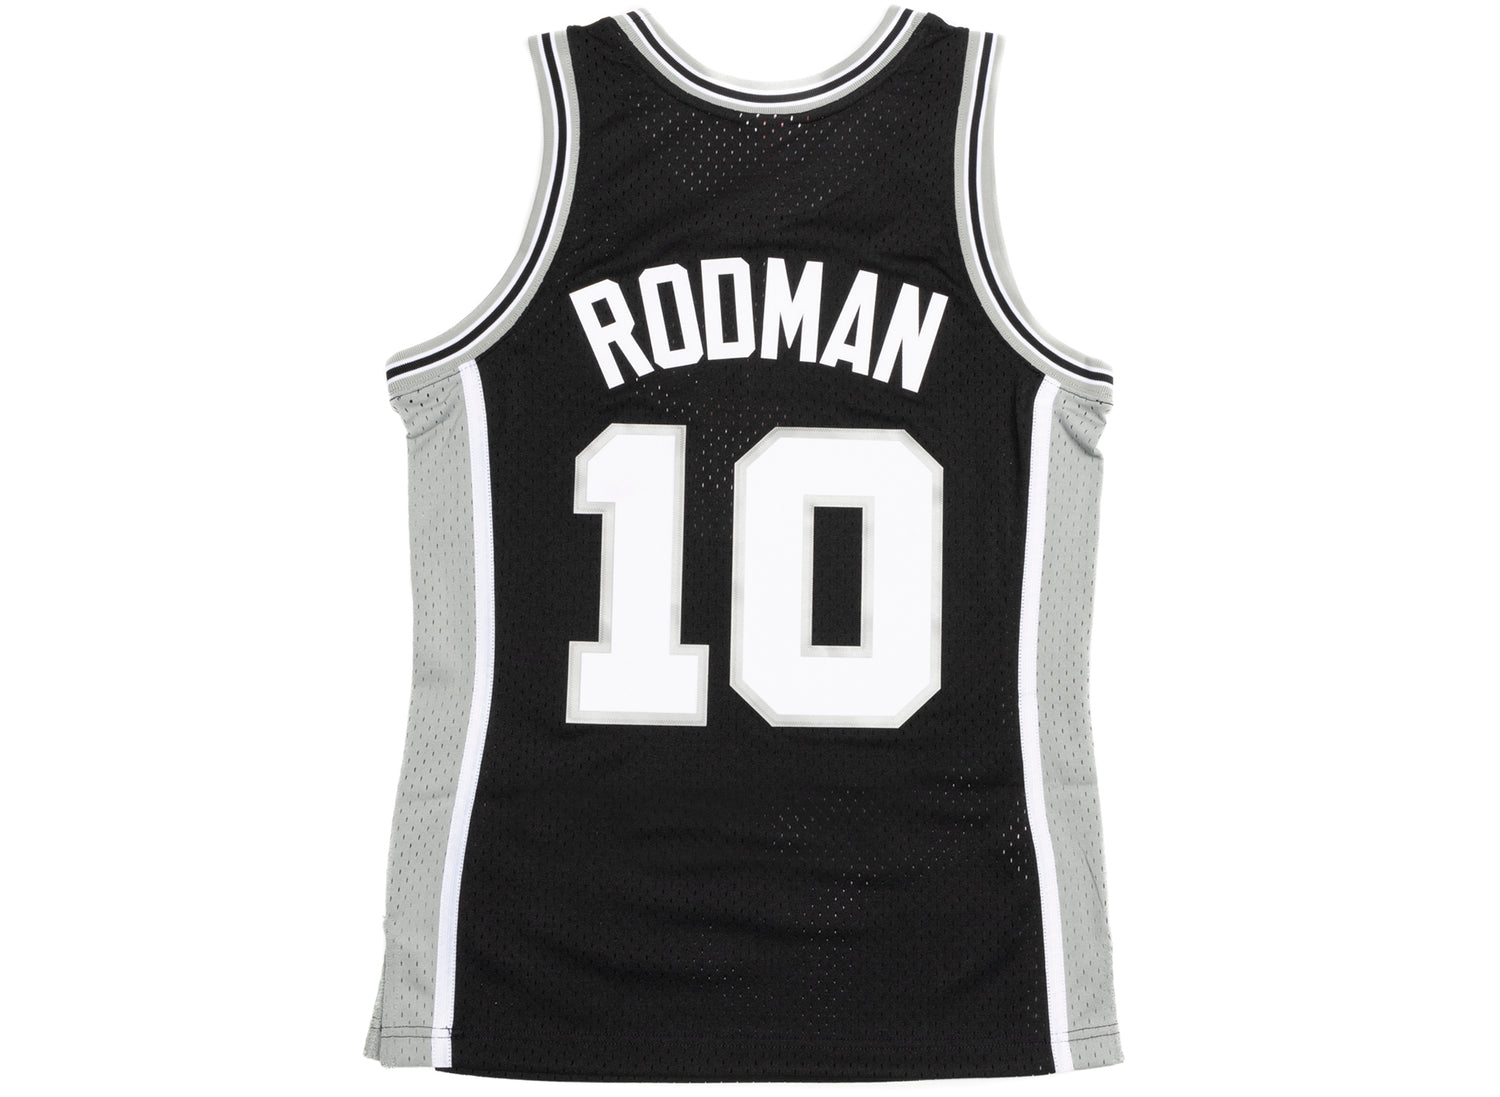 Mitchell & Ness NBA Spurs 1993 Dennis Rodman Jersey S